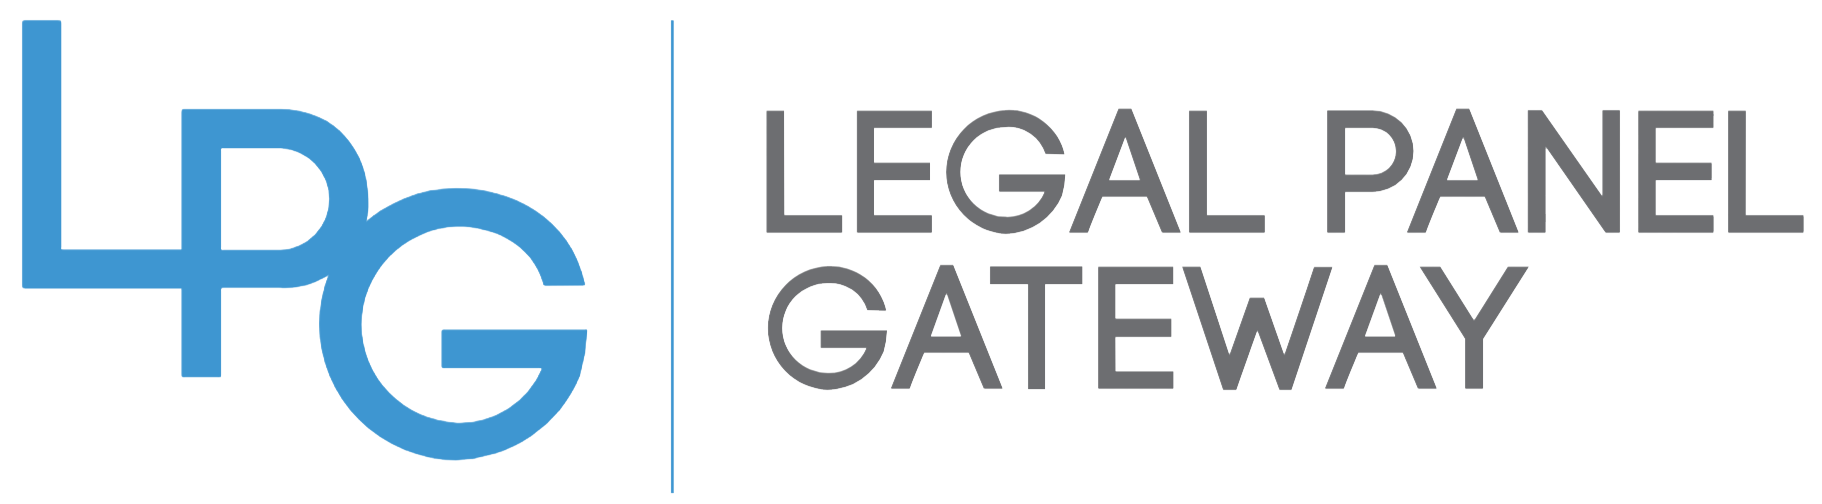 Legal Panel Gateway